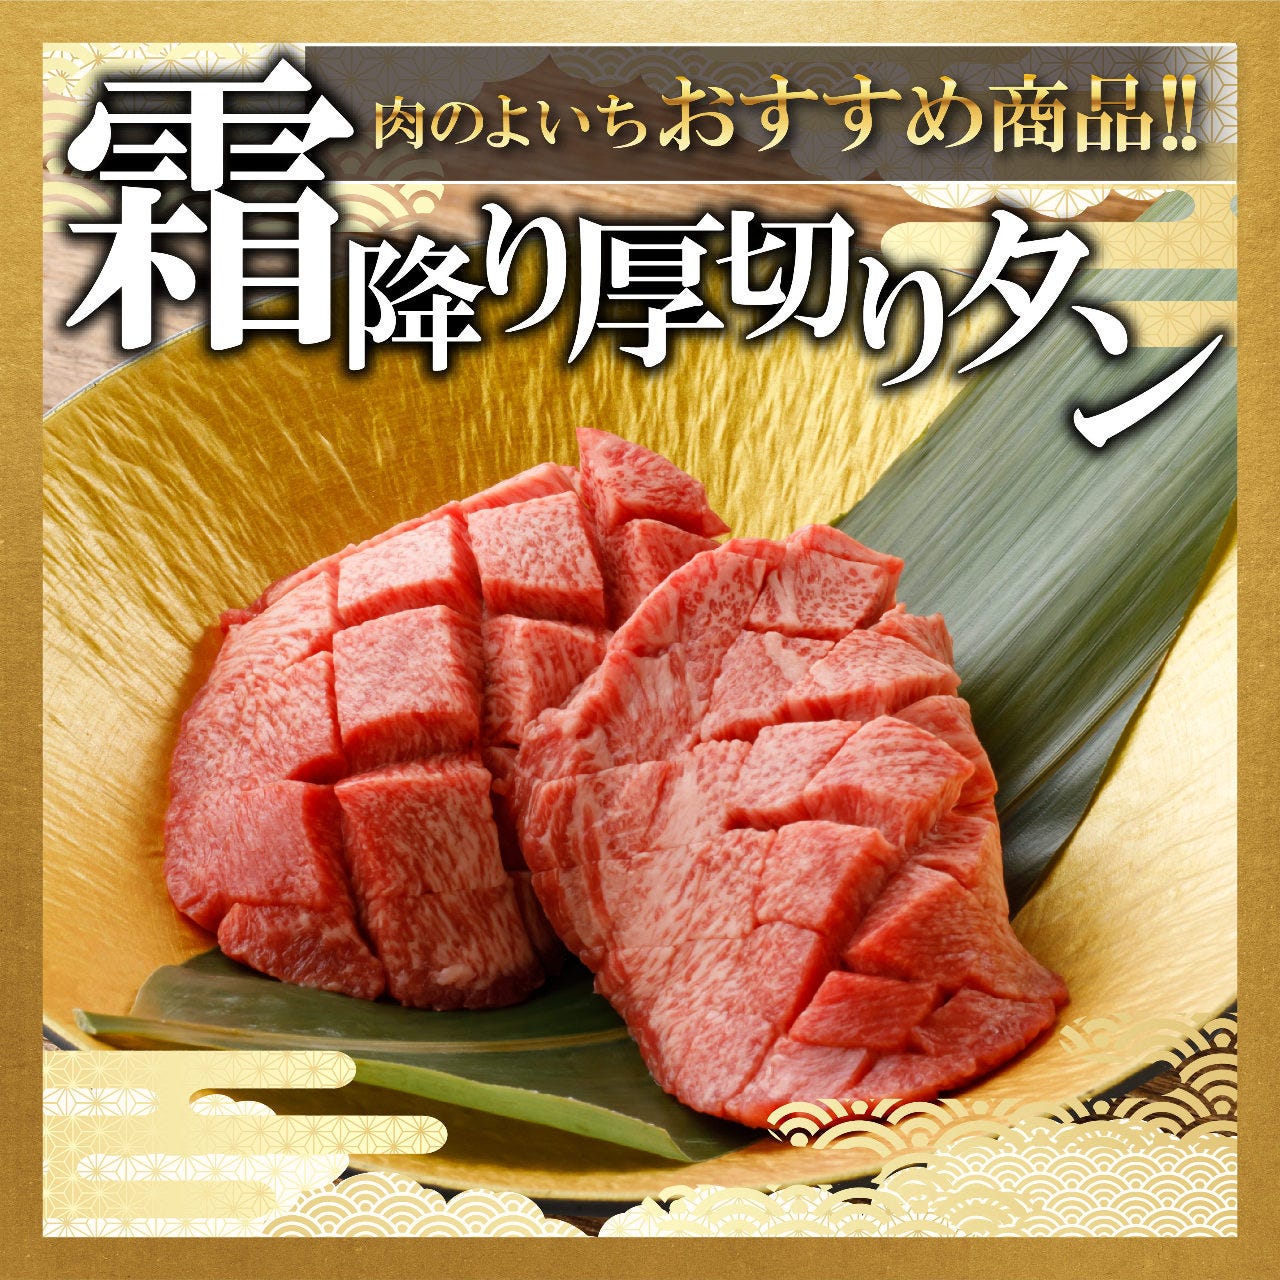 お米と焼肉 肉のよいち 太田川駅前店